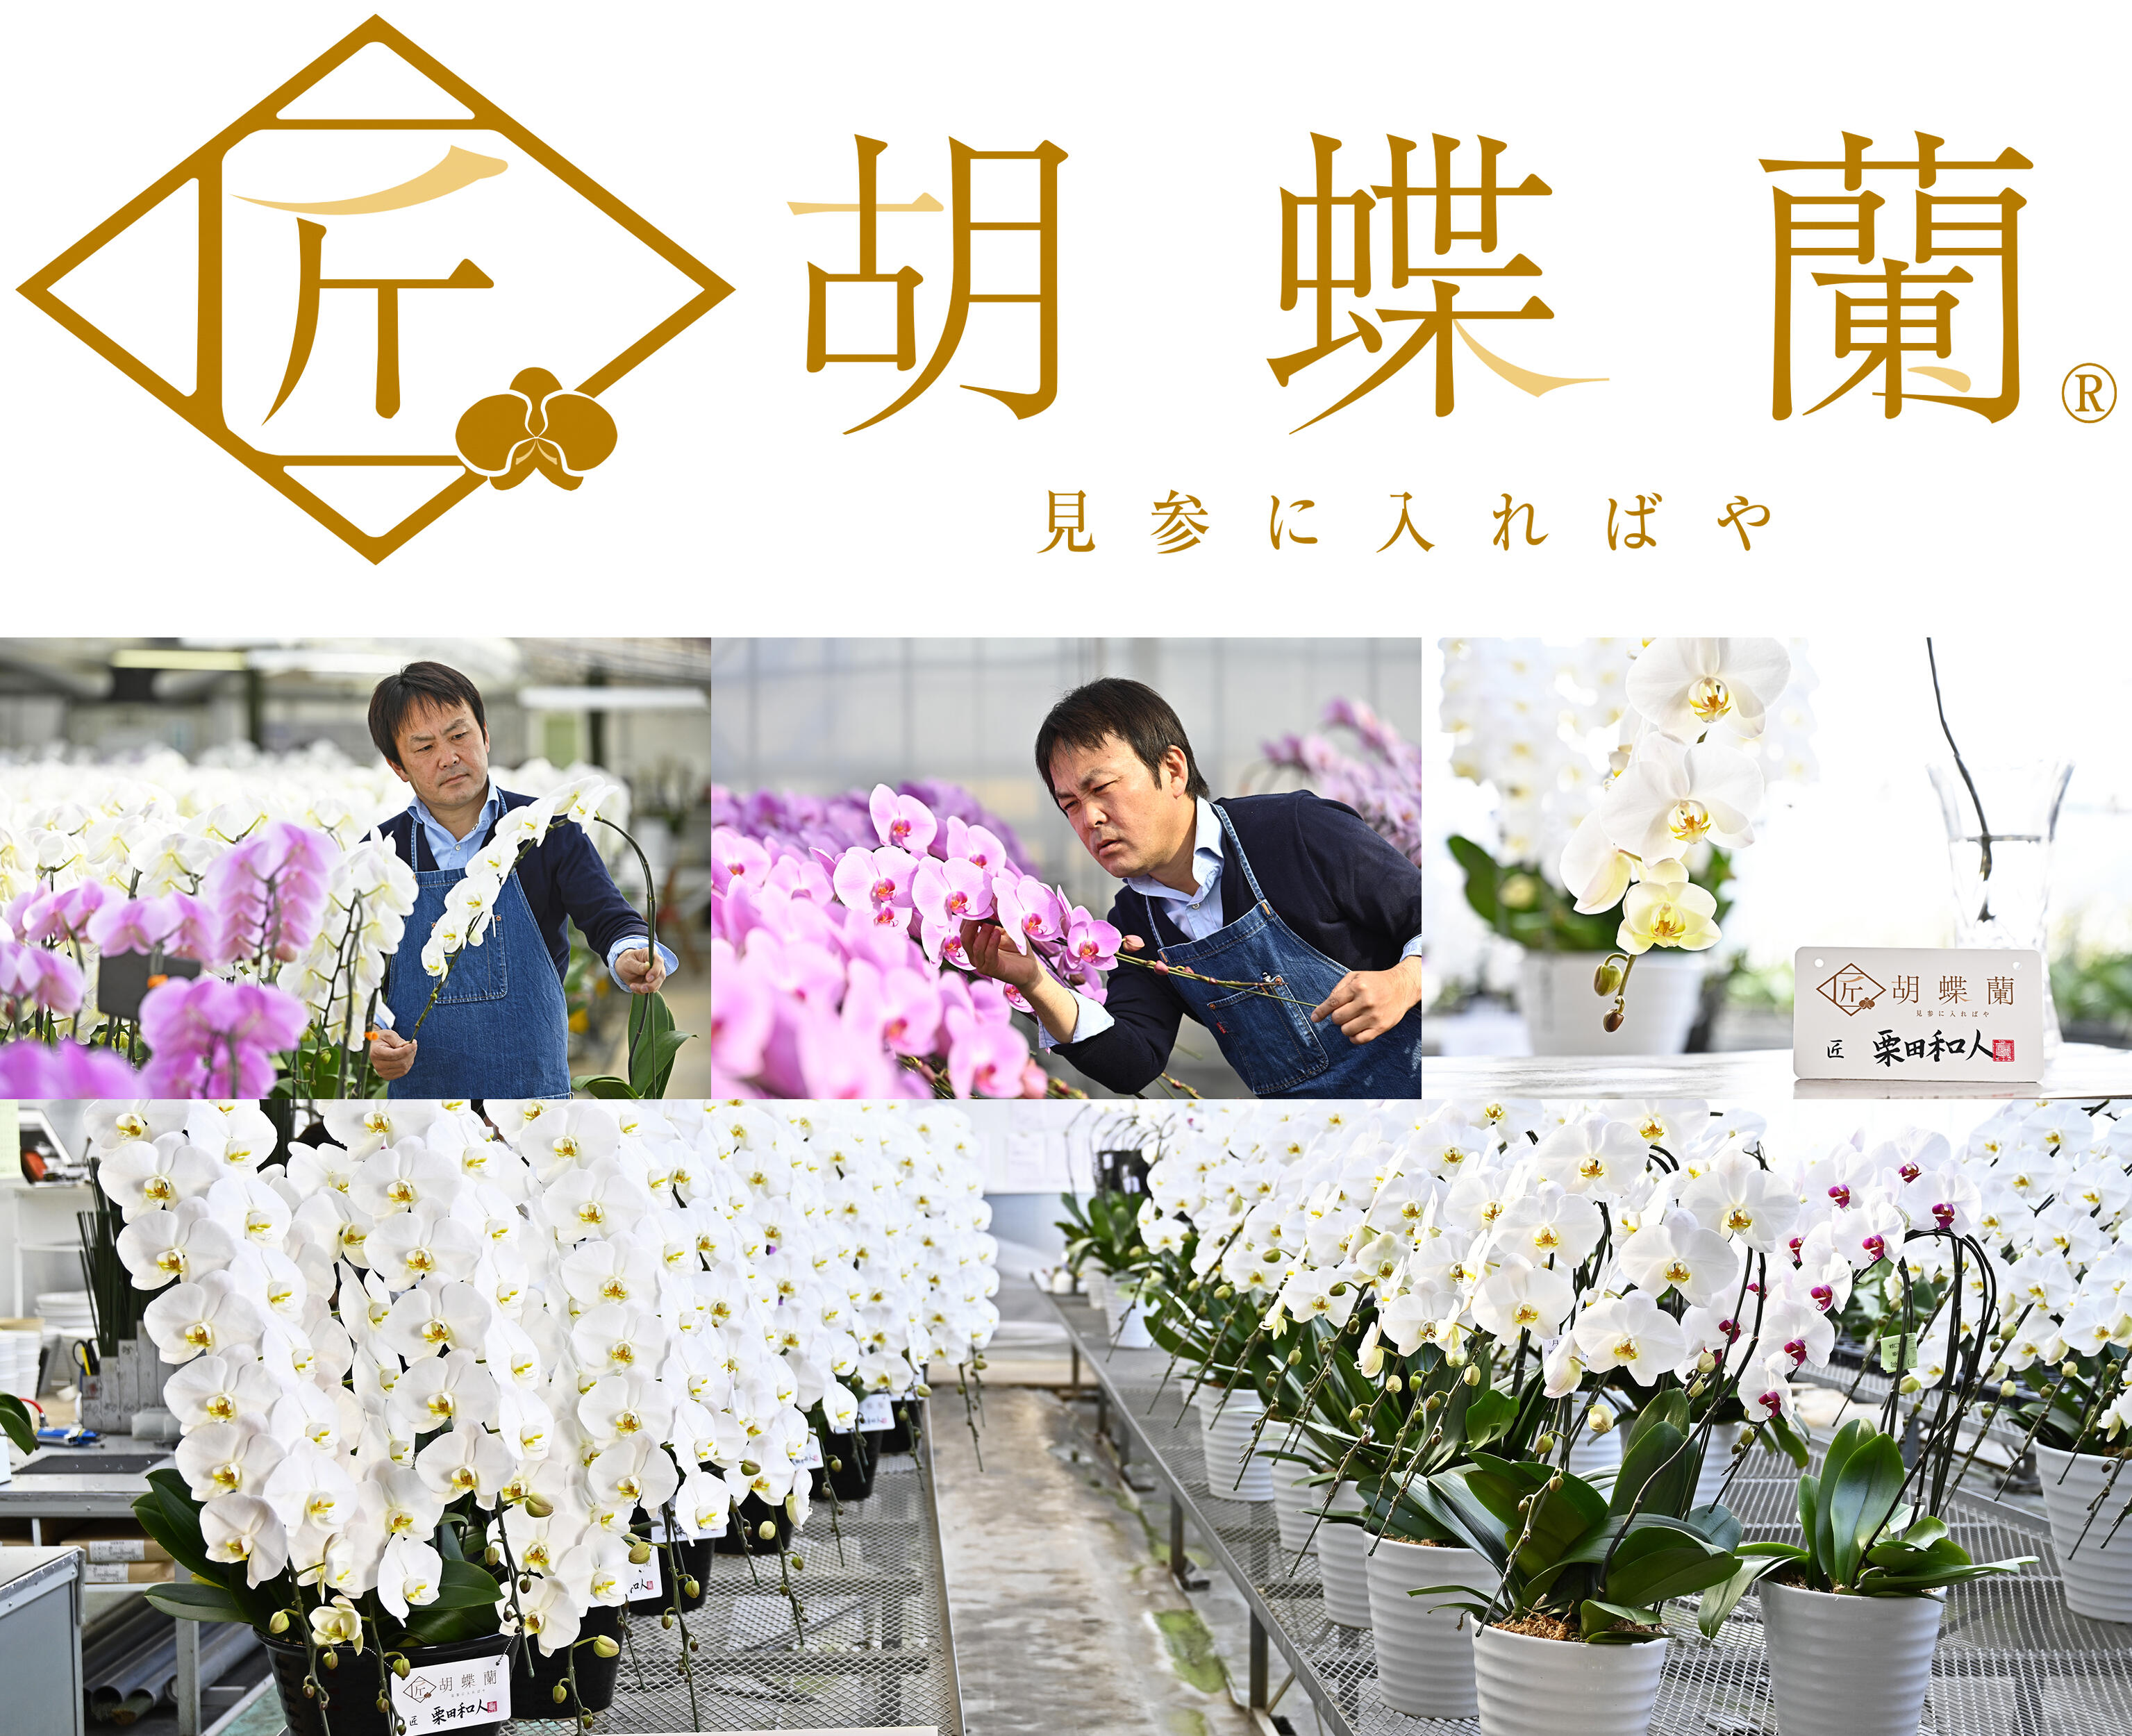 祝い花と供花の販売　ネットの花　ビジネスフラワー®の「匠胡蝶蘭®」栗田洋蘭園